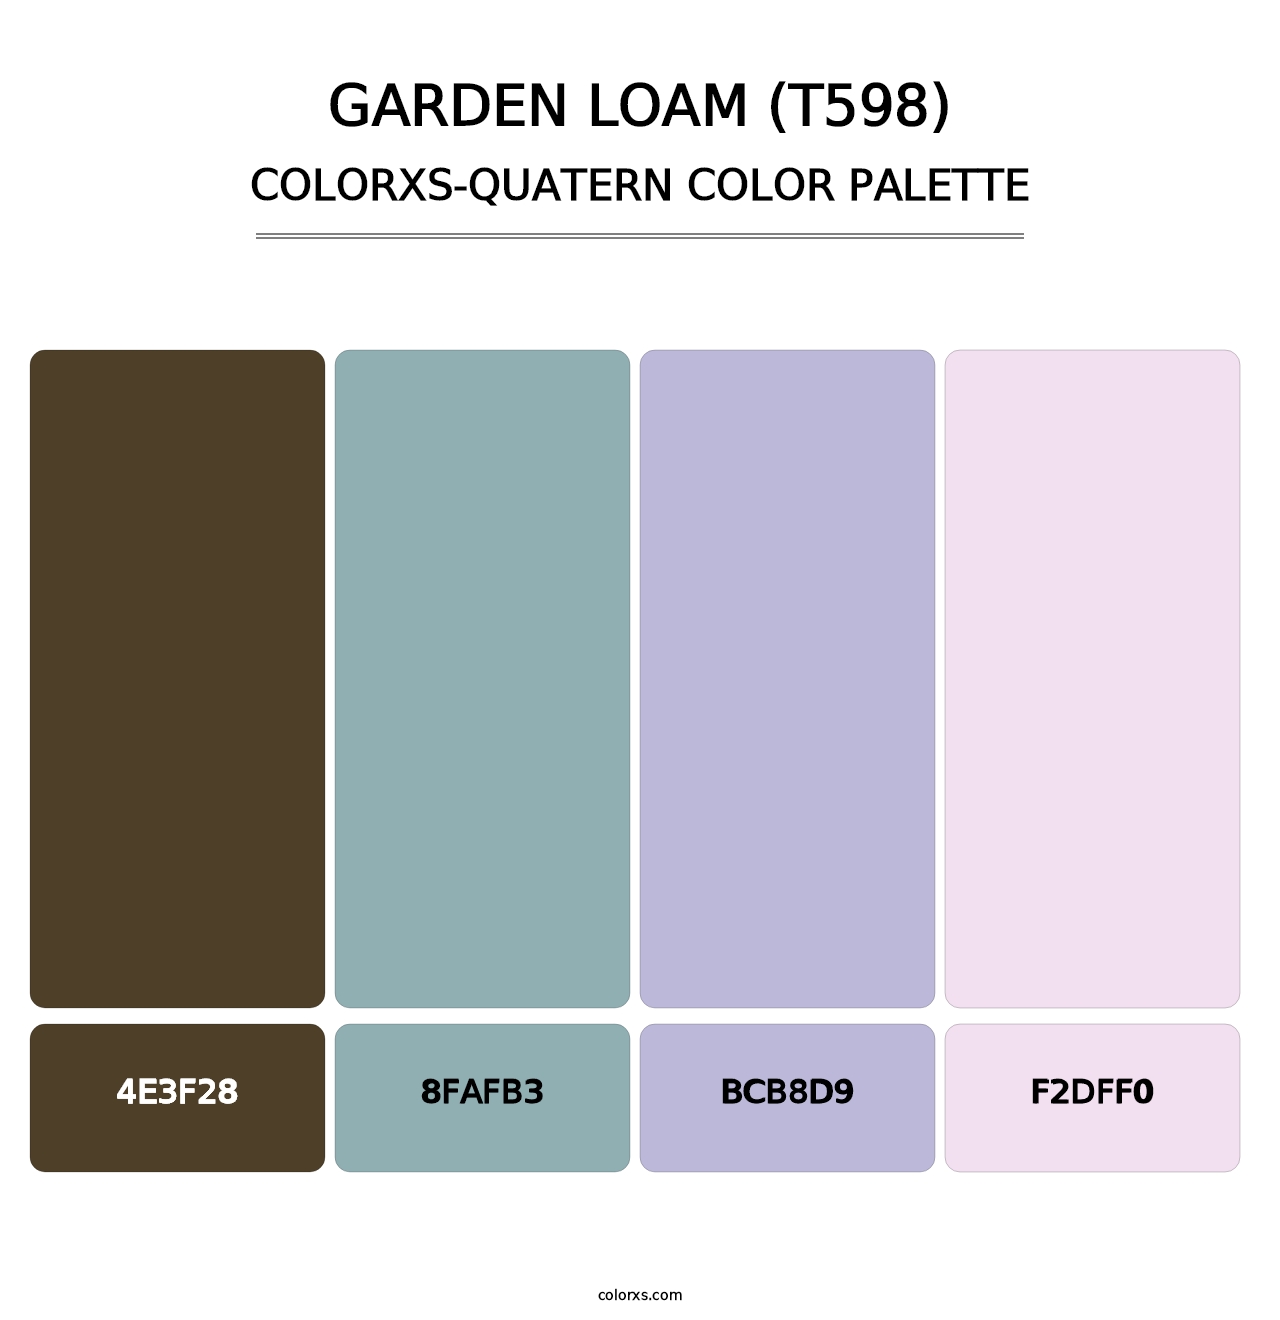 Garden Loam (T598) - Colorxs Quatern Palette